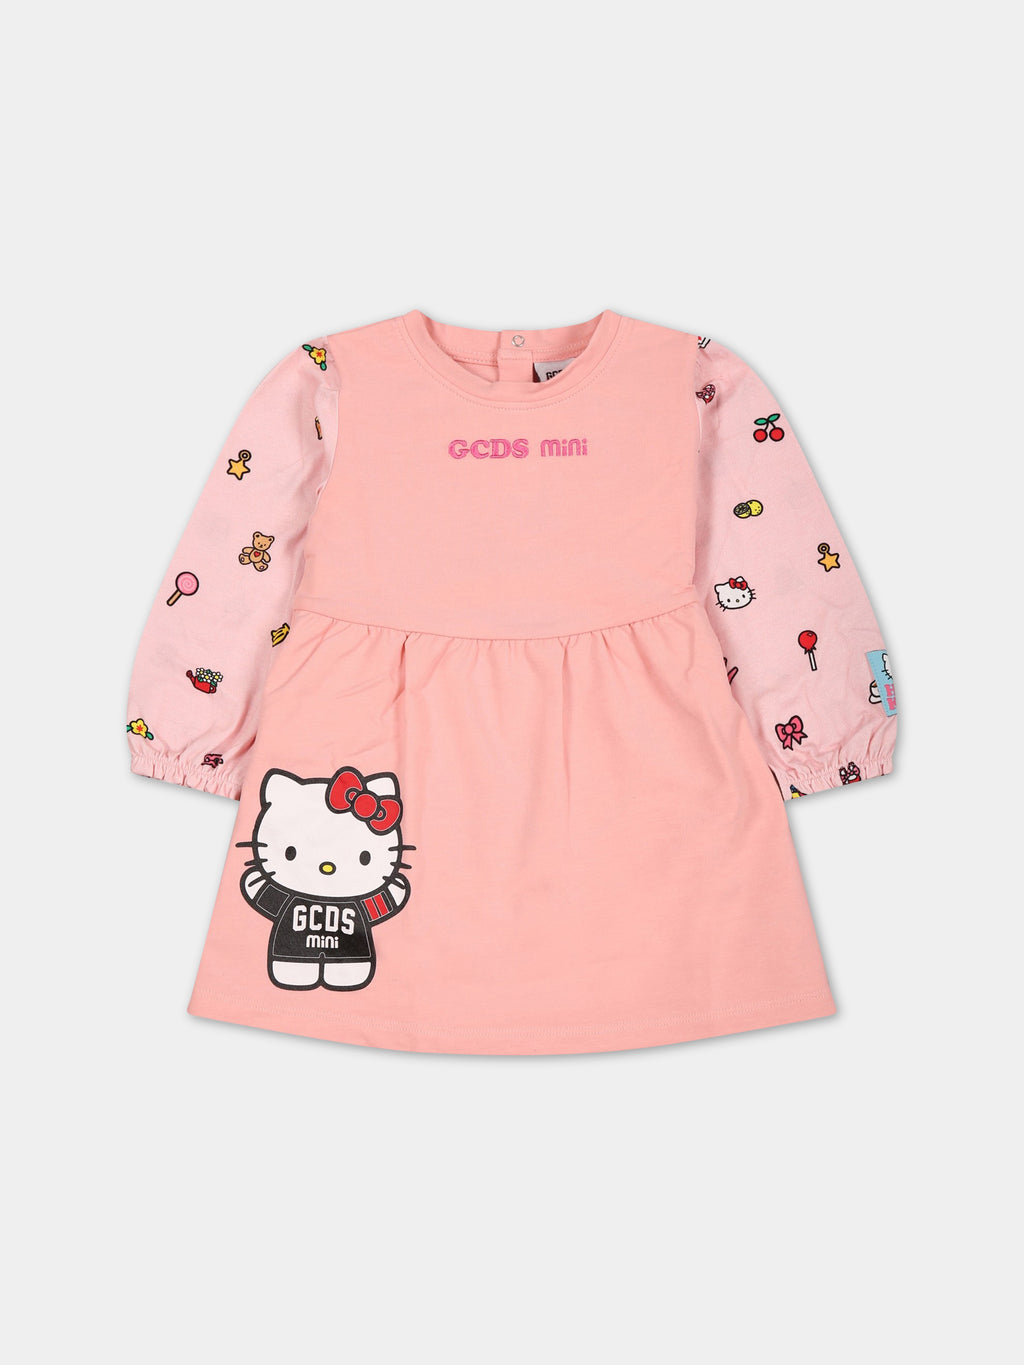 Vestito rosa per neonata con stampa e logo